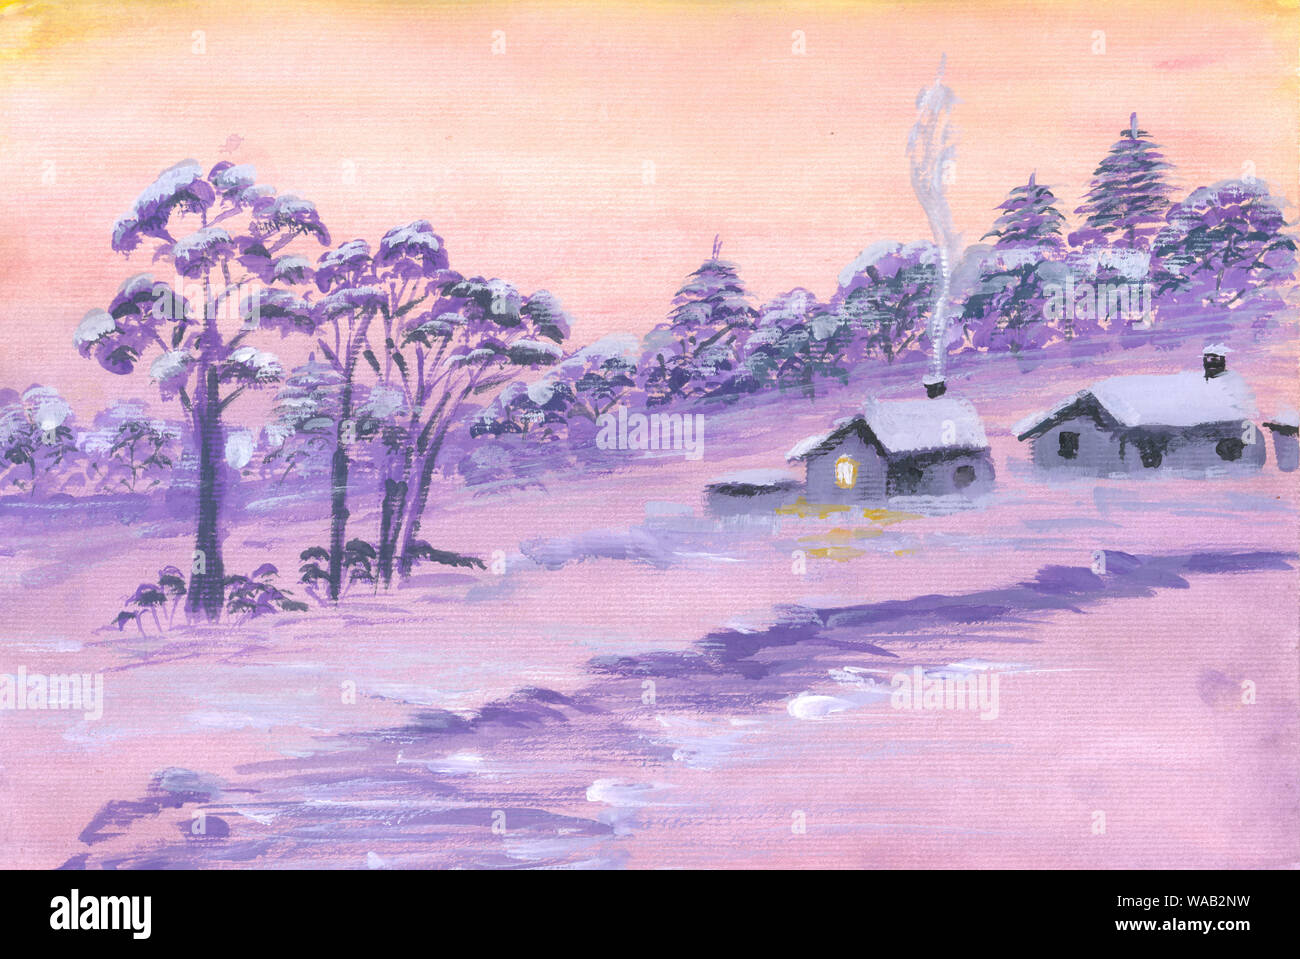 Weihnachten Nacht Landschaft Aquarell Hand Malen Abbildung Urlaub Hintergrund Fur Die Grusskarte Einladung Winter Nacht Landschaft Mit Haus Und Stockfotografie Alamy